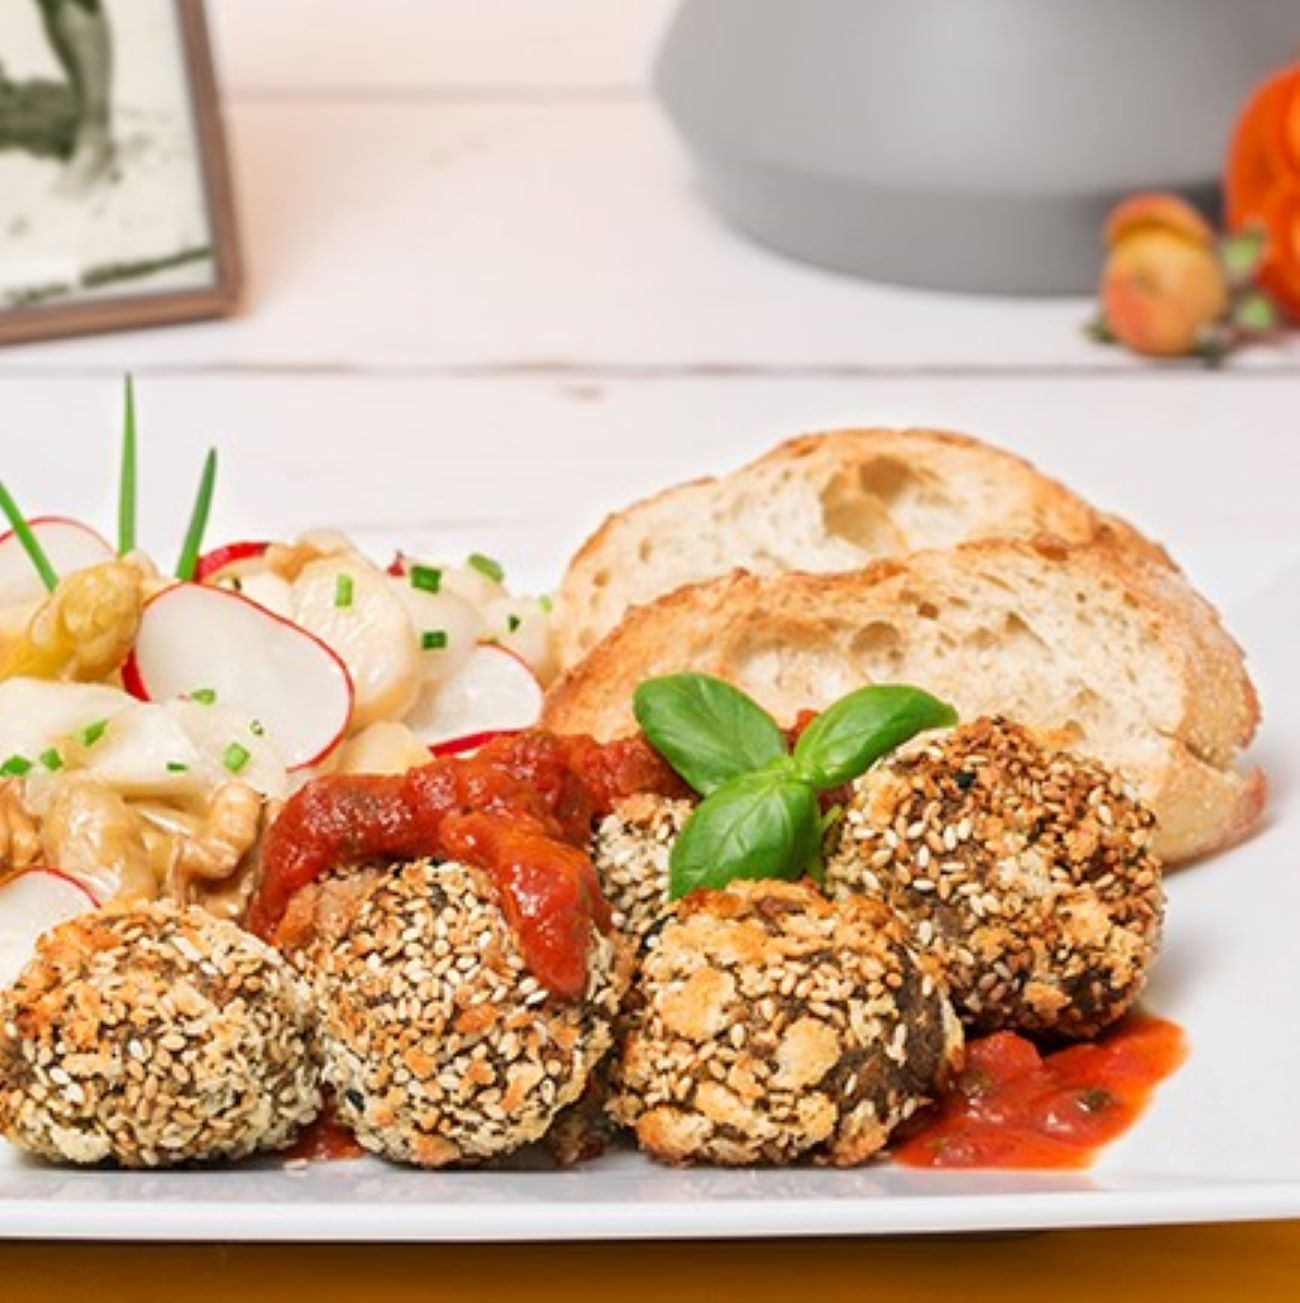 Kvinojine kroglice postrežemo s paradižnikovo omako in špargljevo solato.